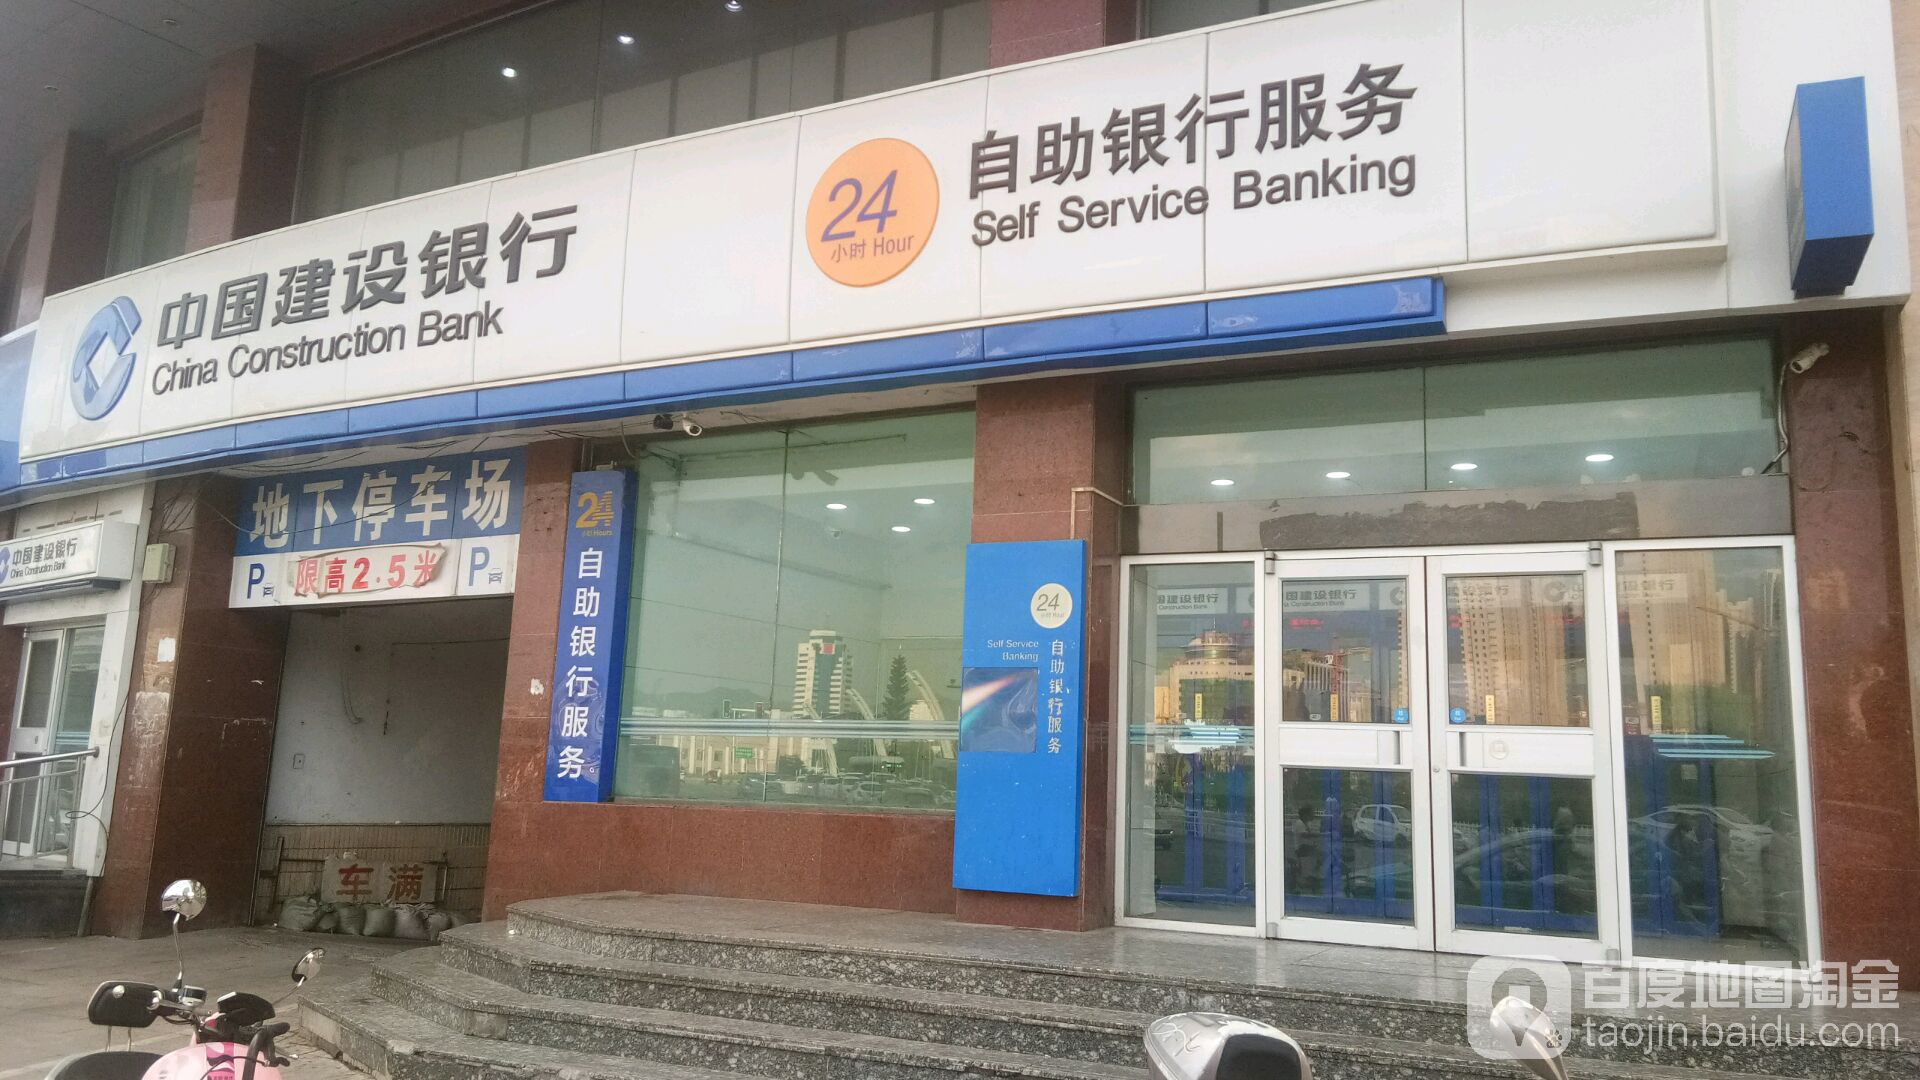 中国建设银行24小时自助银行(至善街)